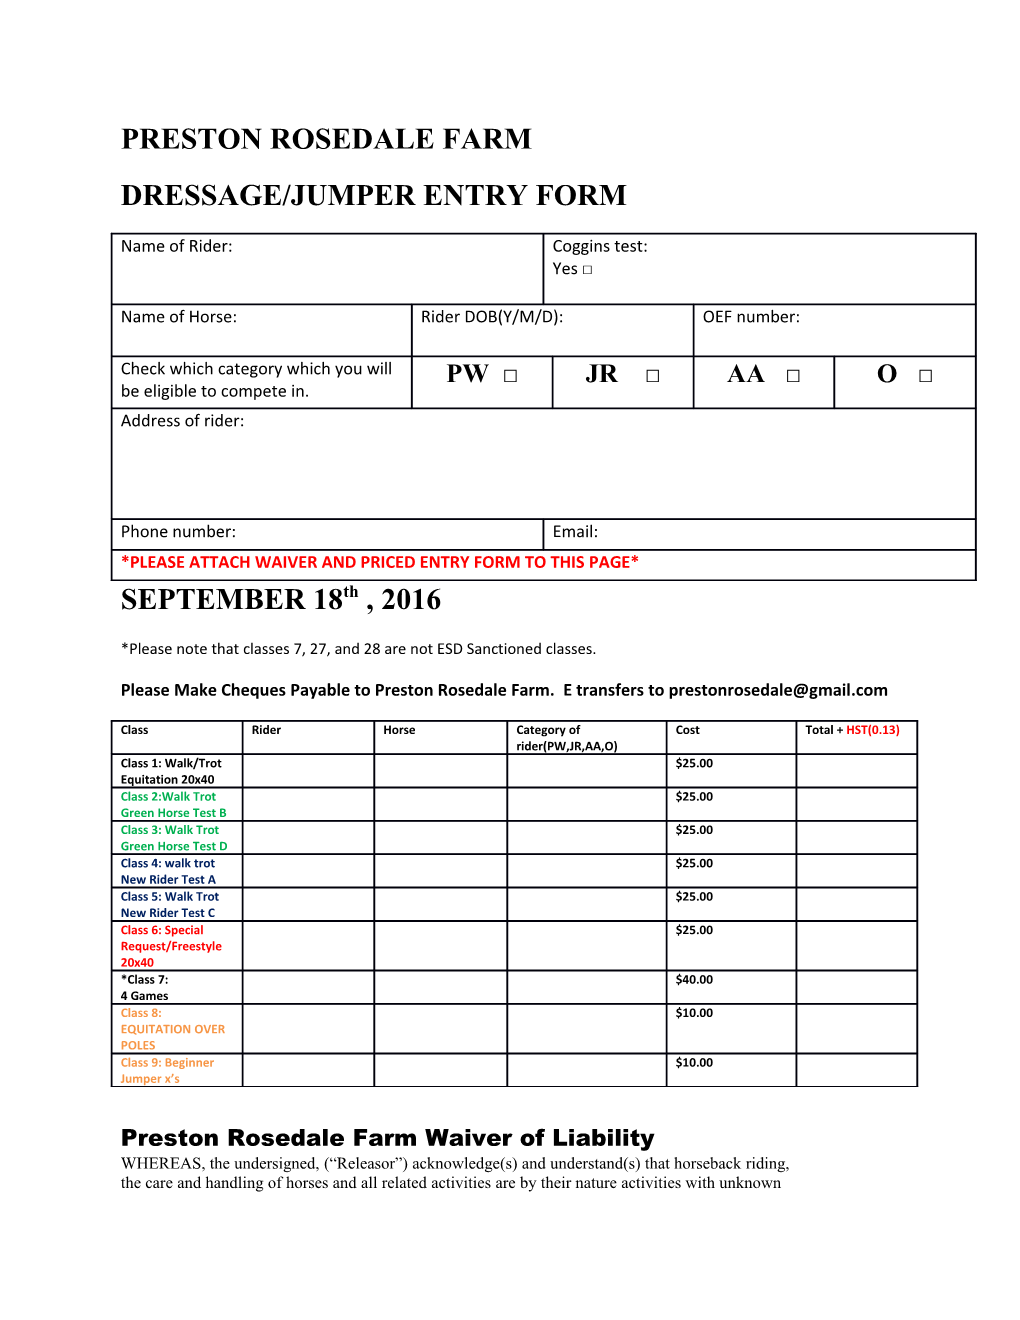 Dressage/Jumper Entry Form